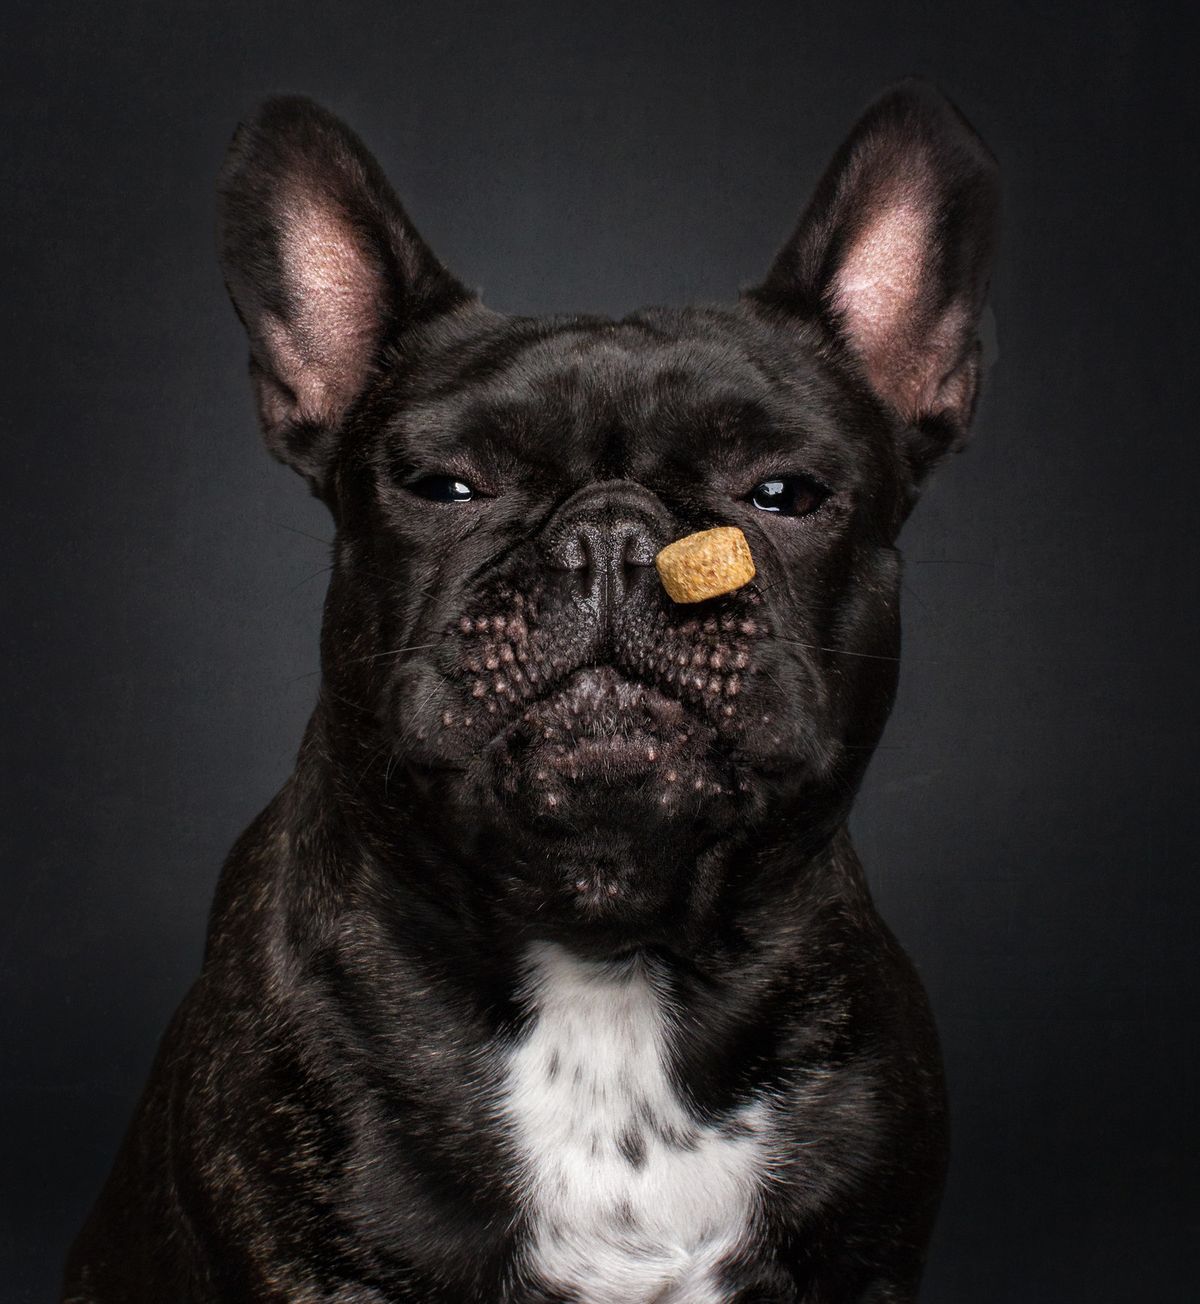 Užite si tieto veľmi hlúpe fotografie psov, ktorí chytajú dobroty